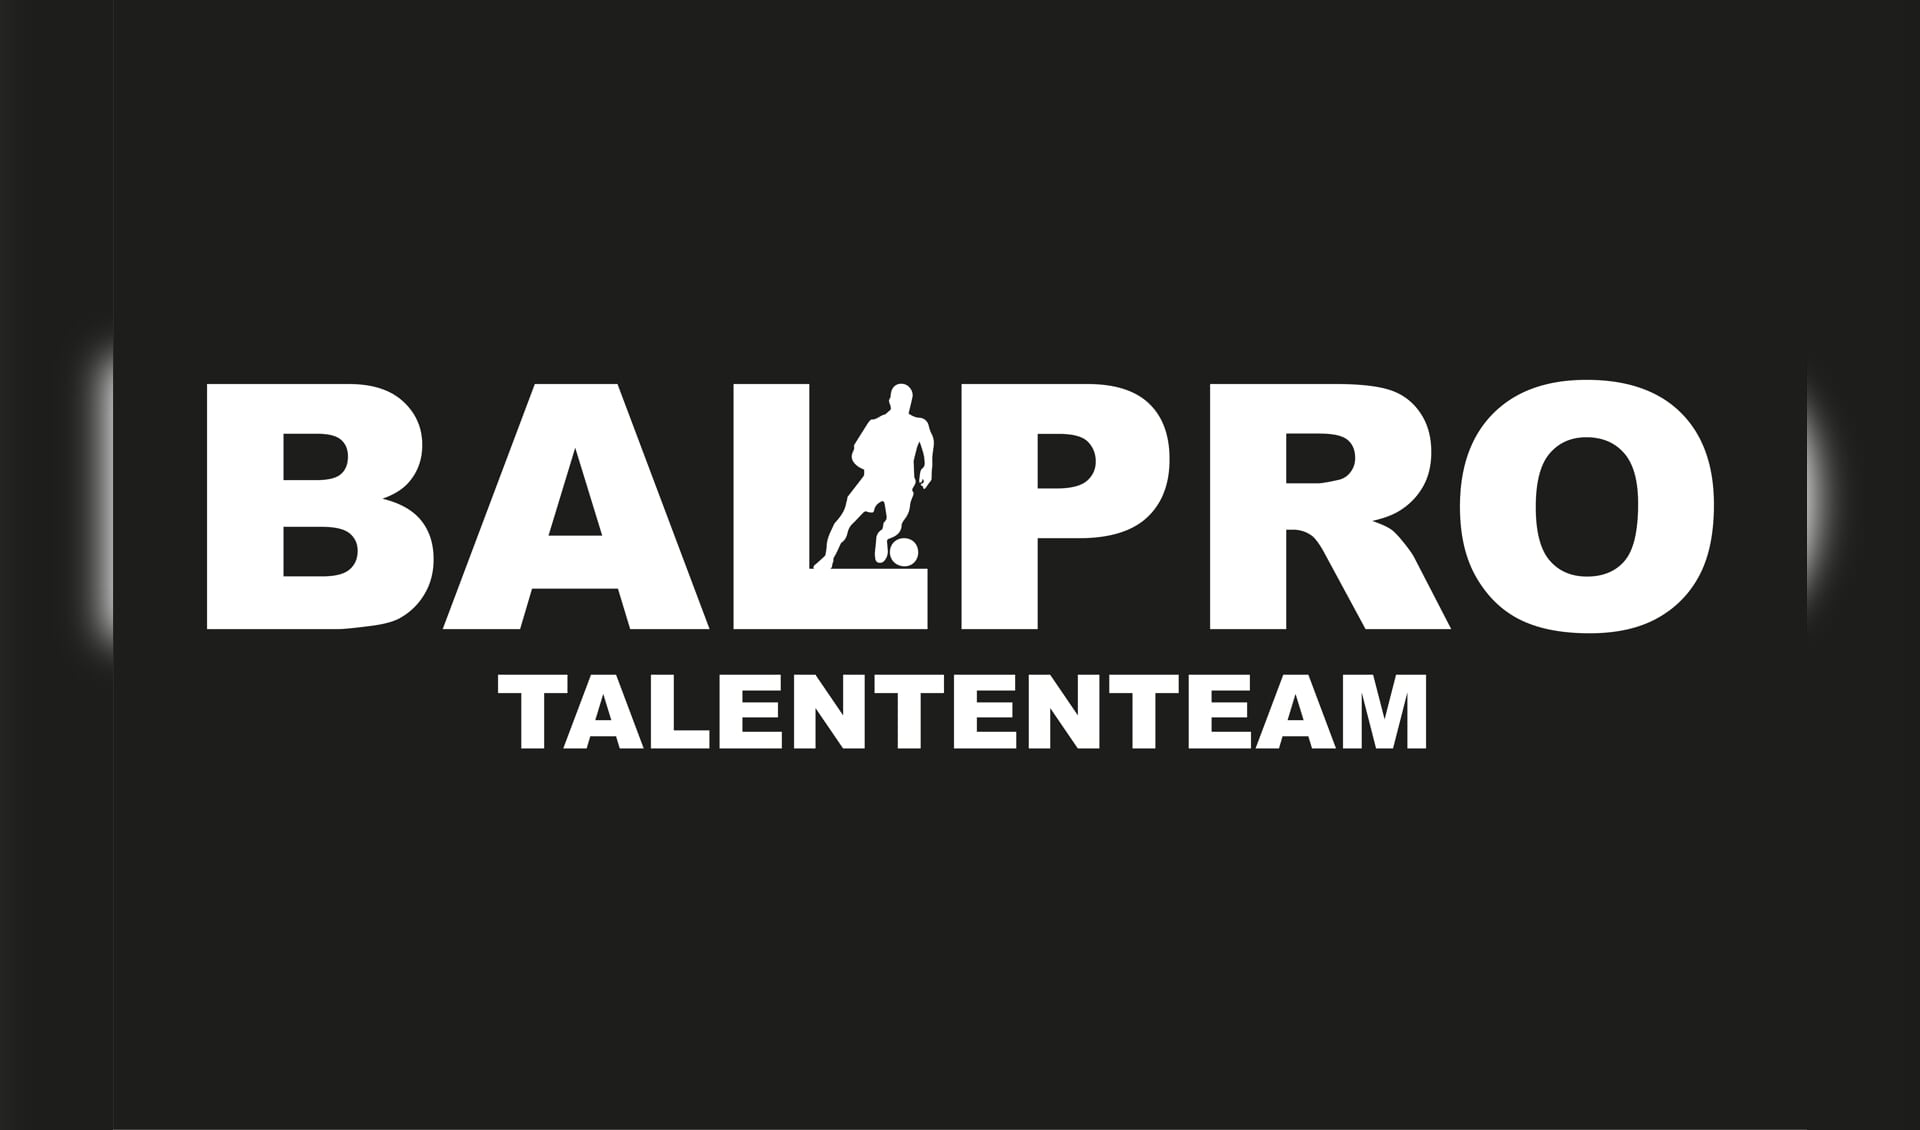 Balpro talententeam | www.balpro.nl